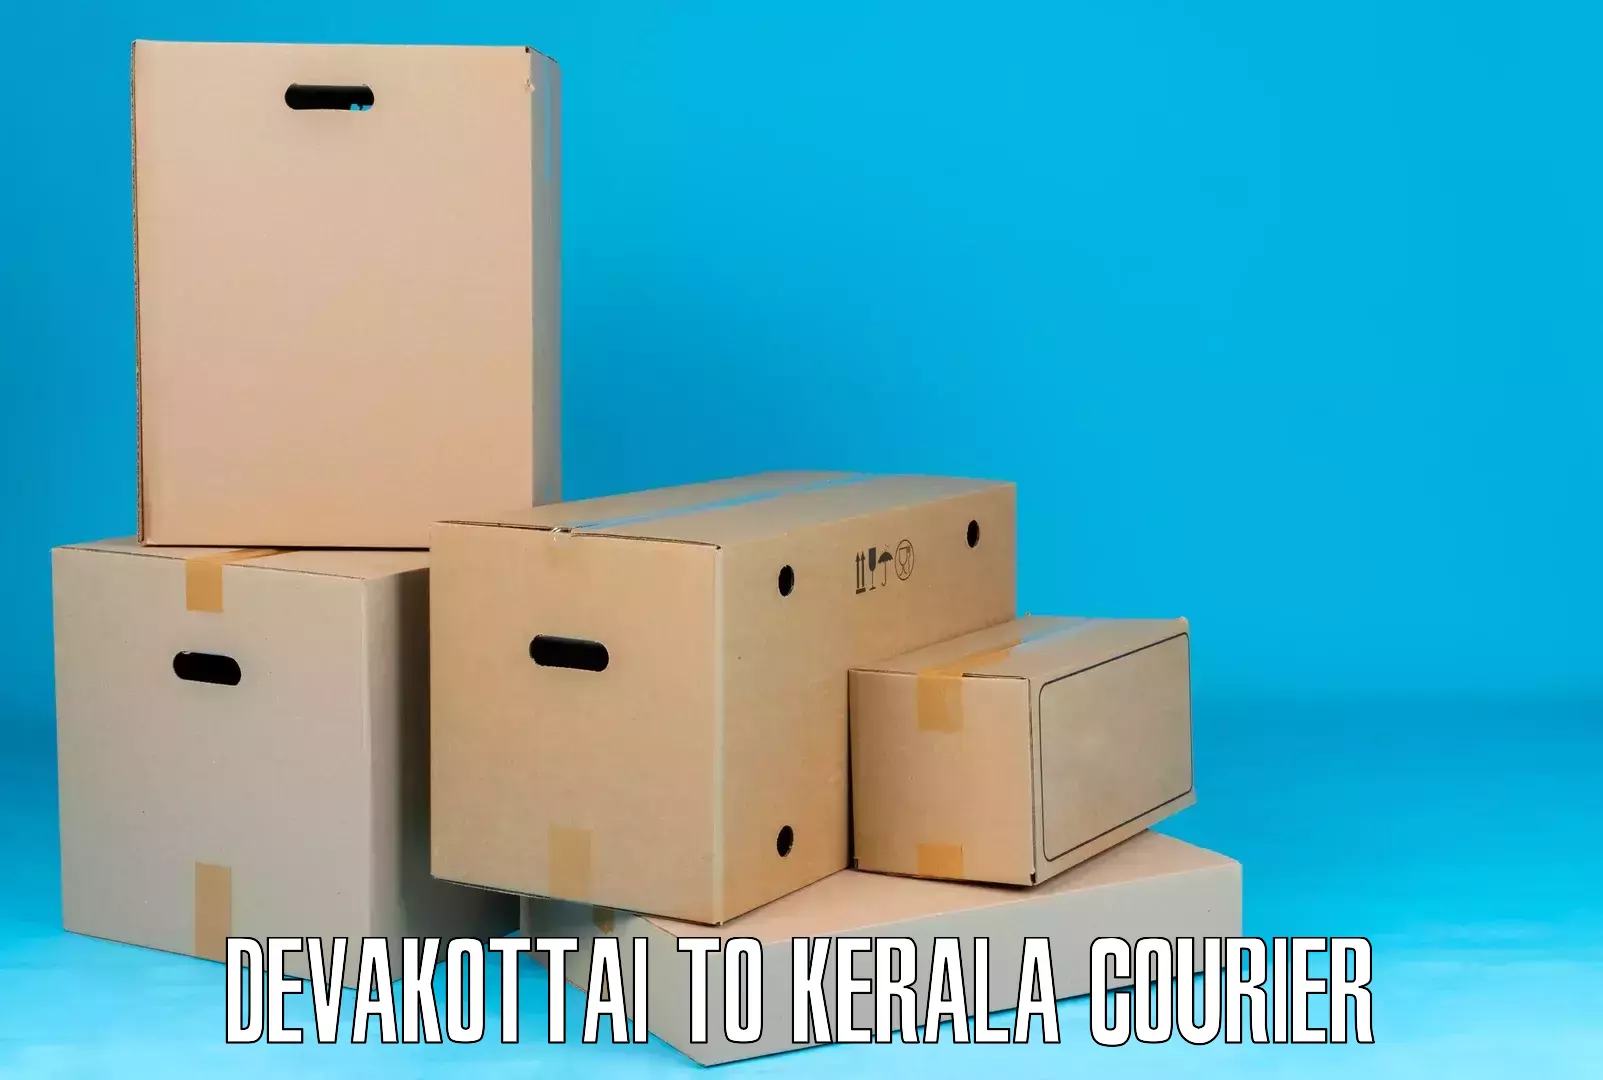 Customer-centric shipping Devakottai to Elamakkara